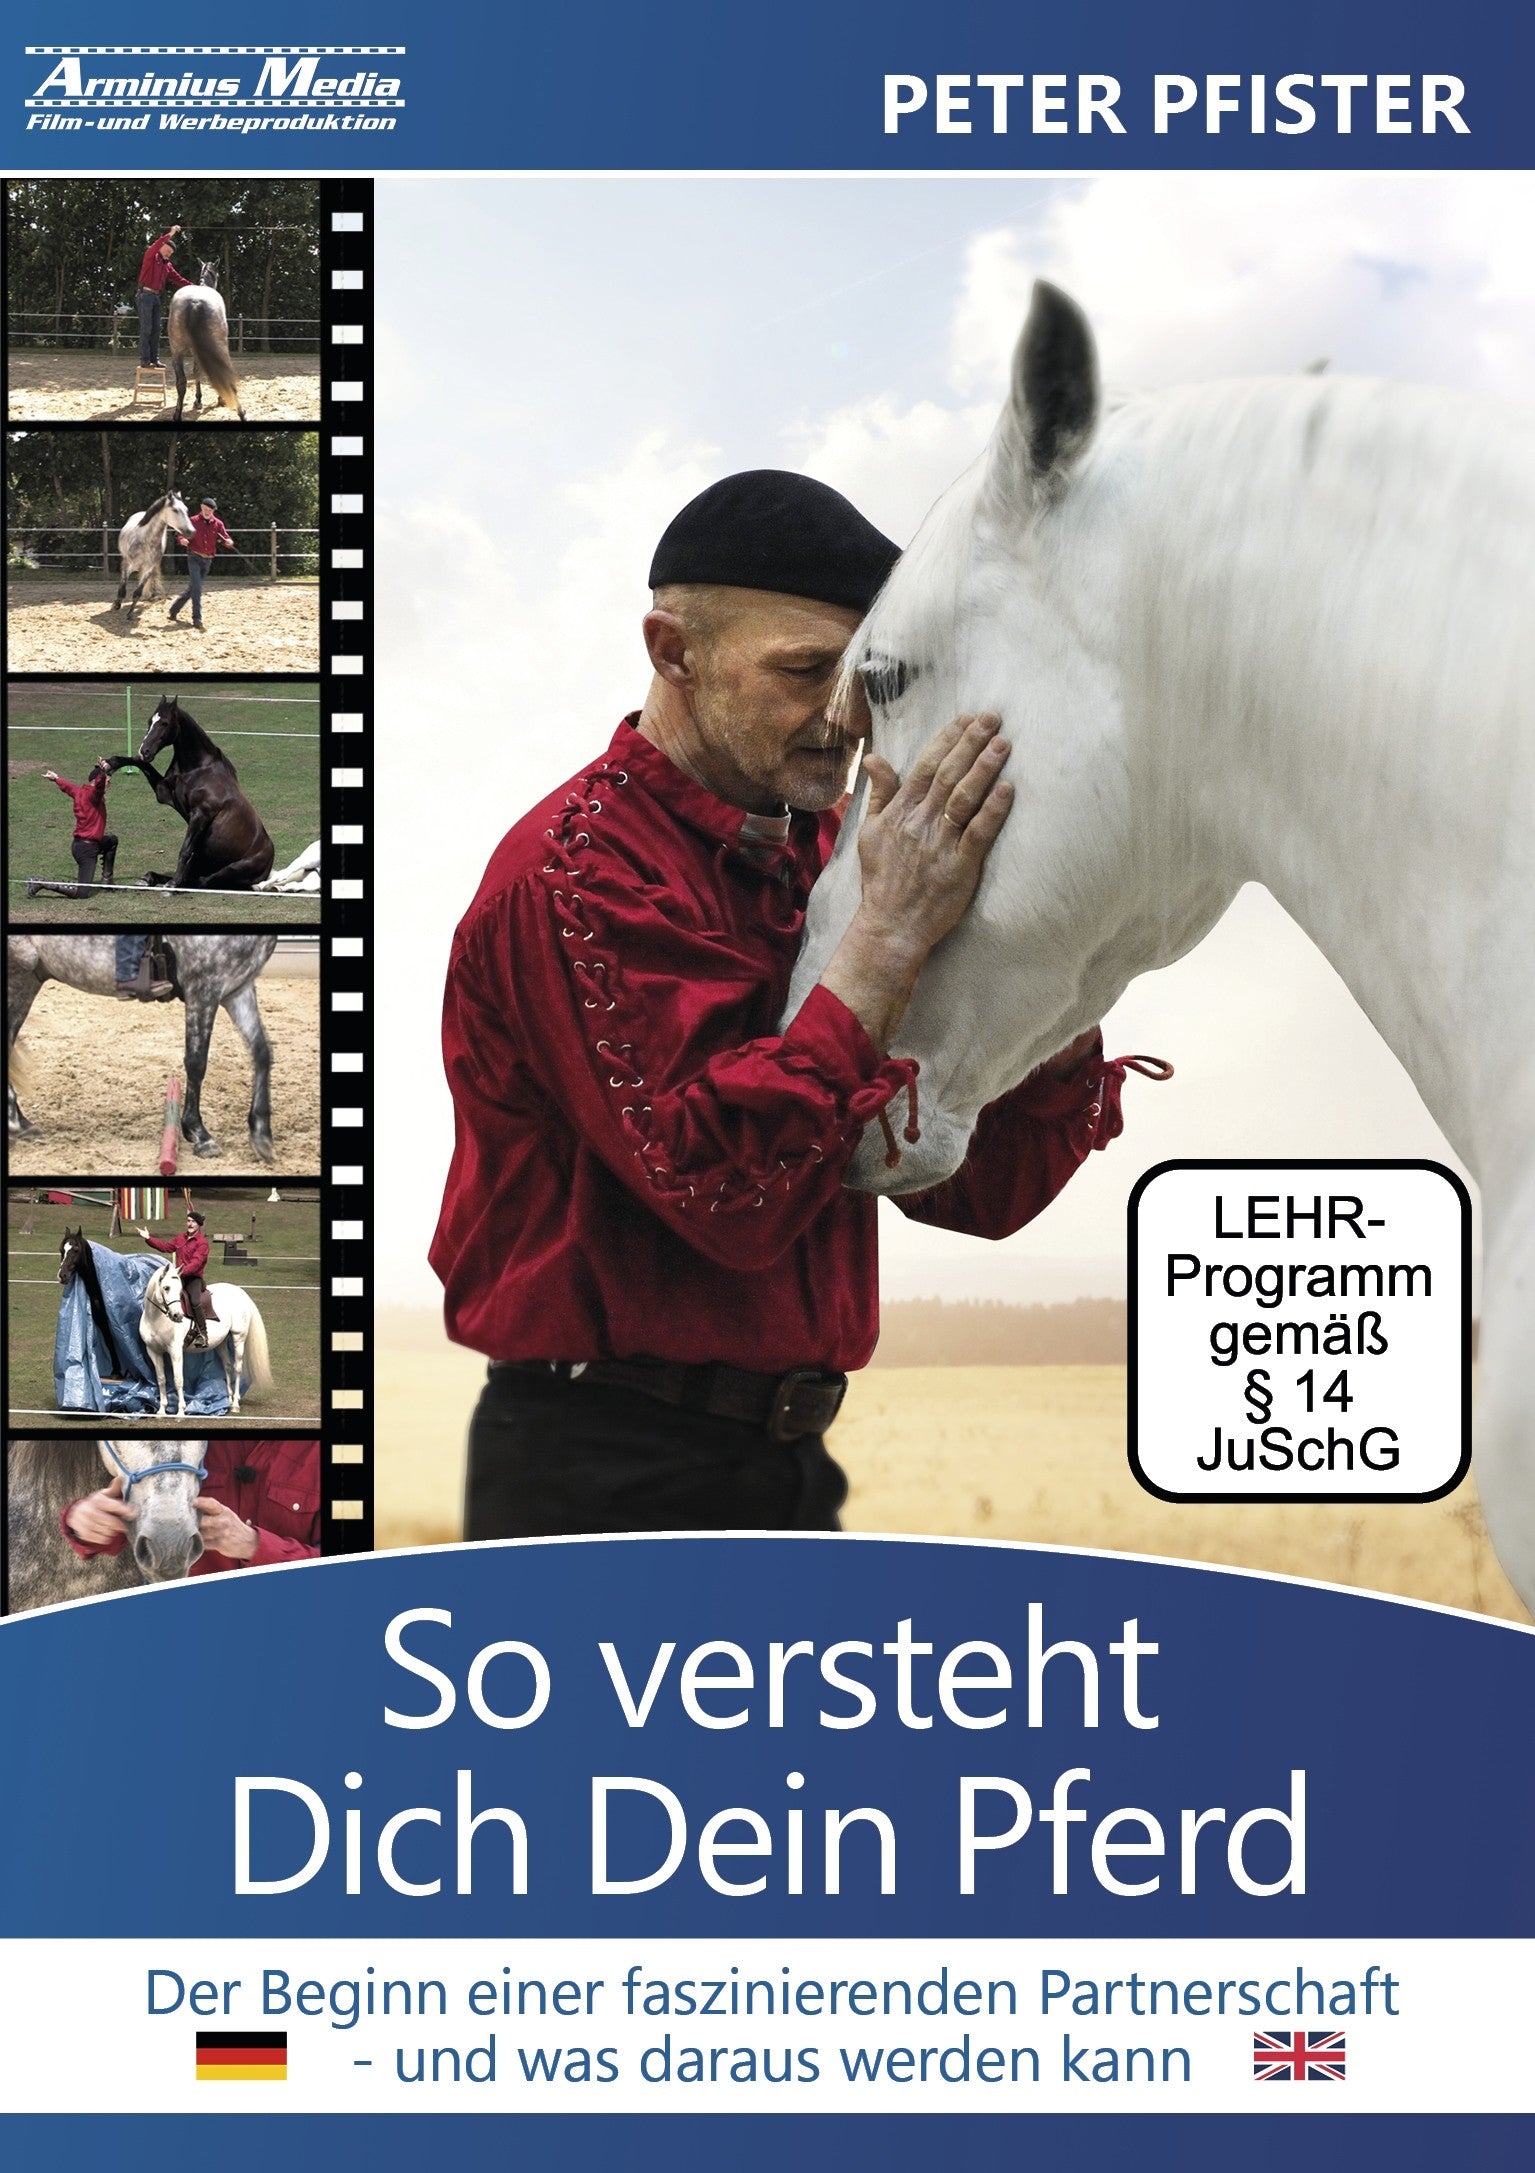 Lehrvideo- DVD "So versteht Dich Dein Pferd" mit Peter Pfister